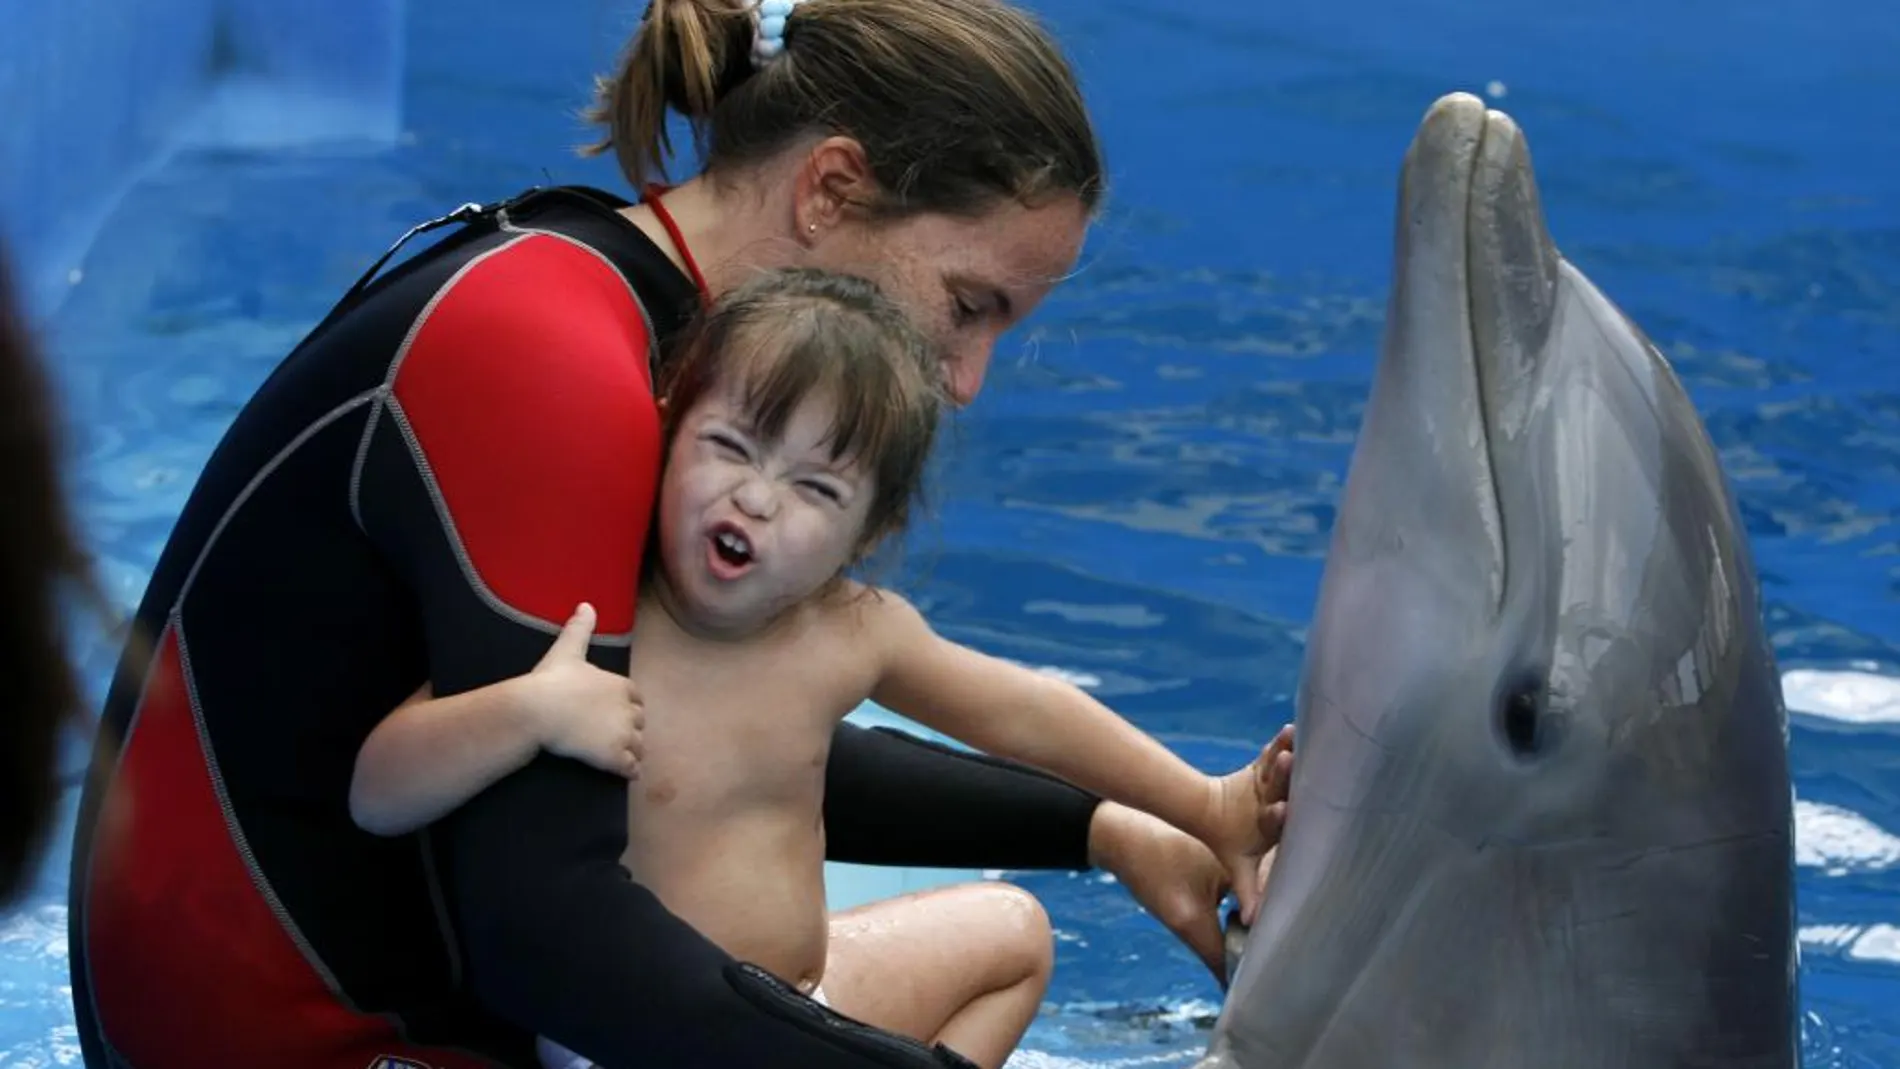 La terapia con delfines es muy beneficiosa para los niños con autismo